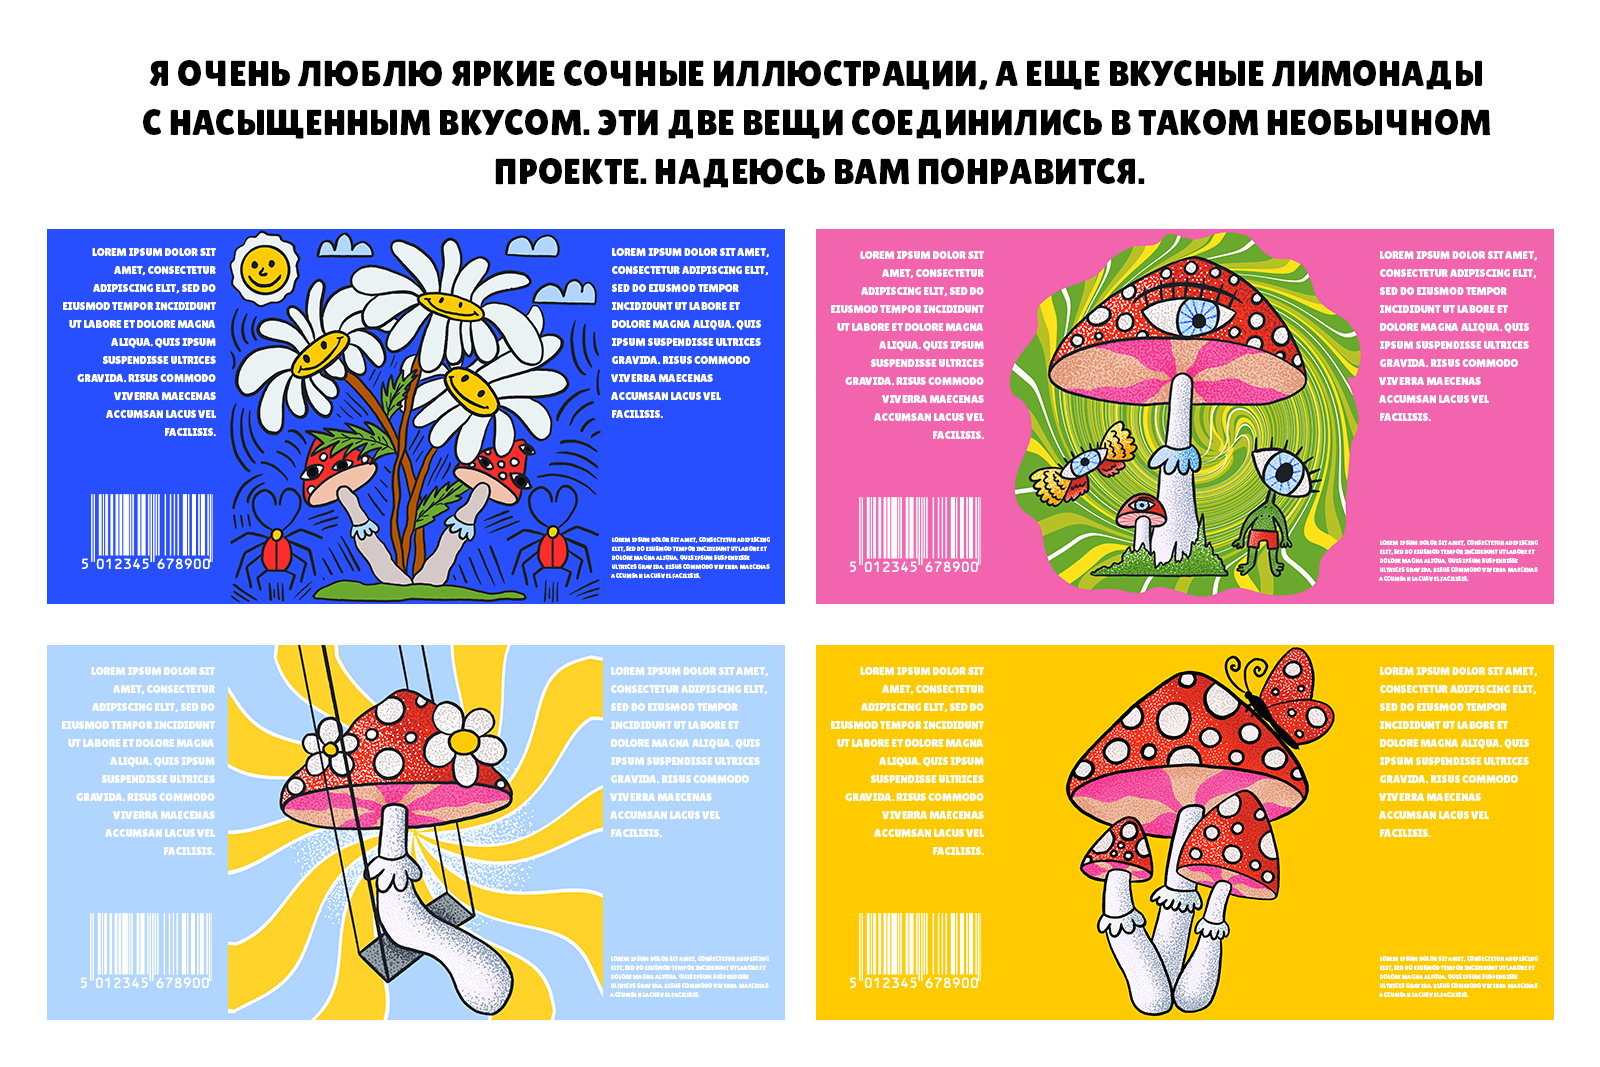 Упаковка для лимонадов с яркими грибами — Изображение №2 — Иллюстрация, Графика на Dprofile